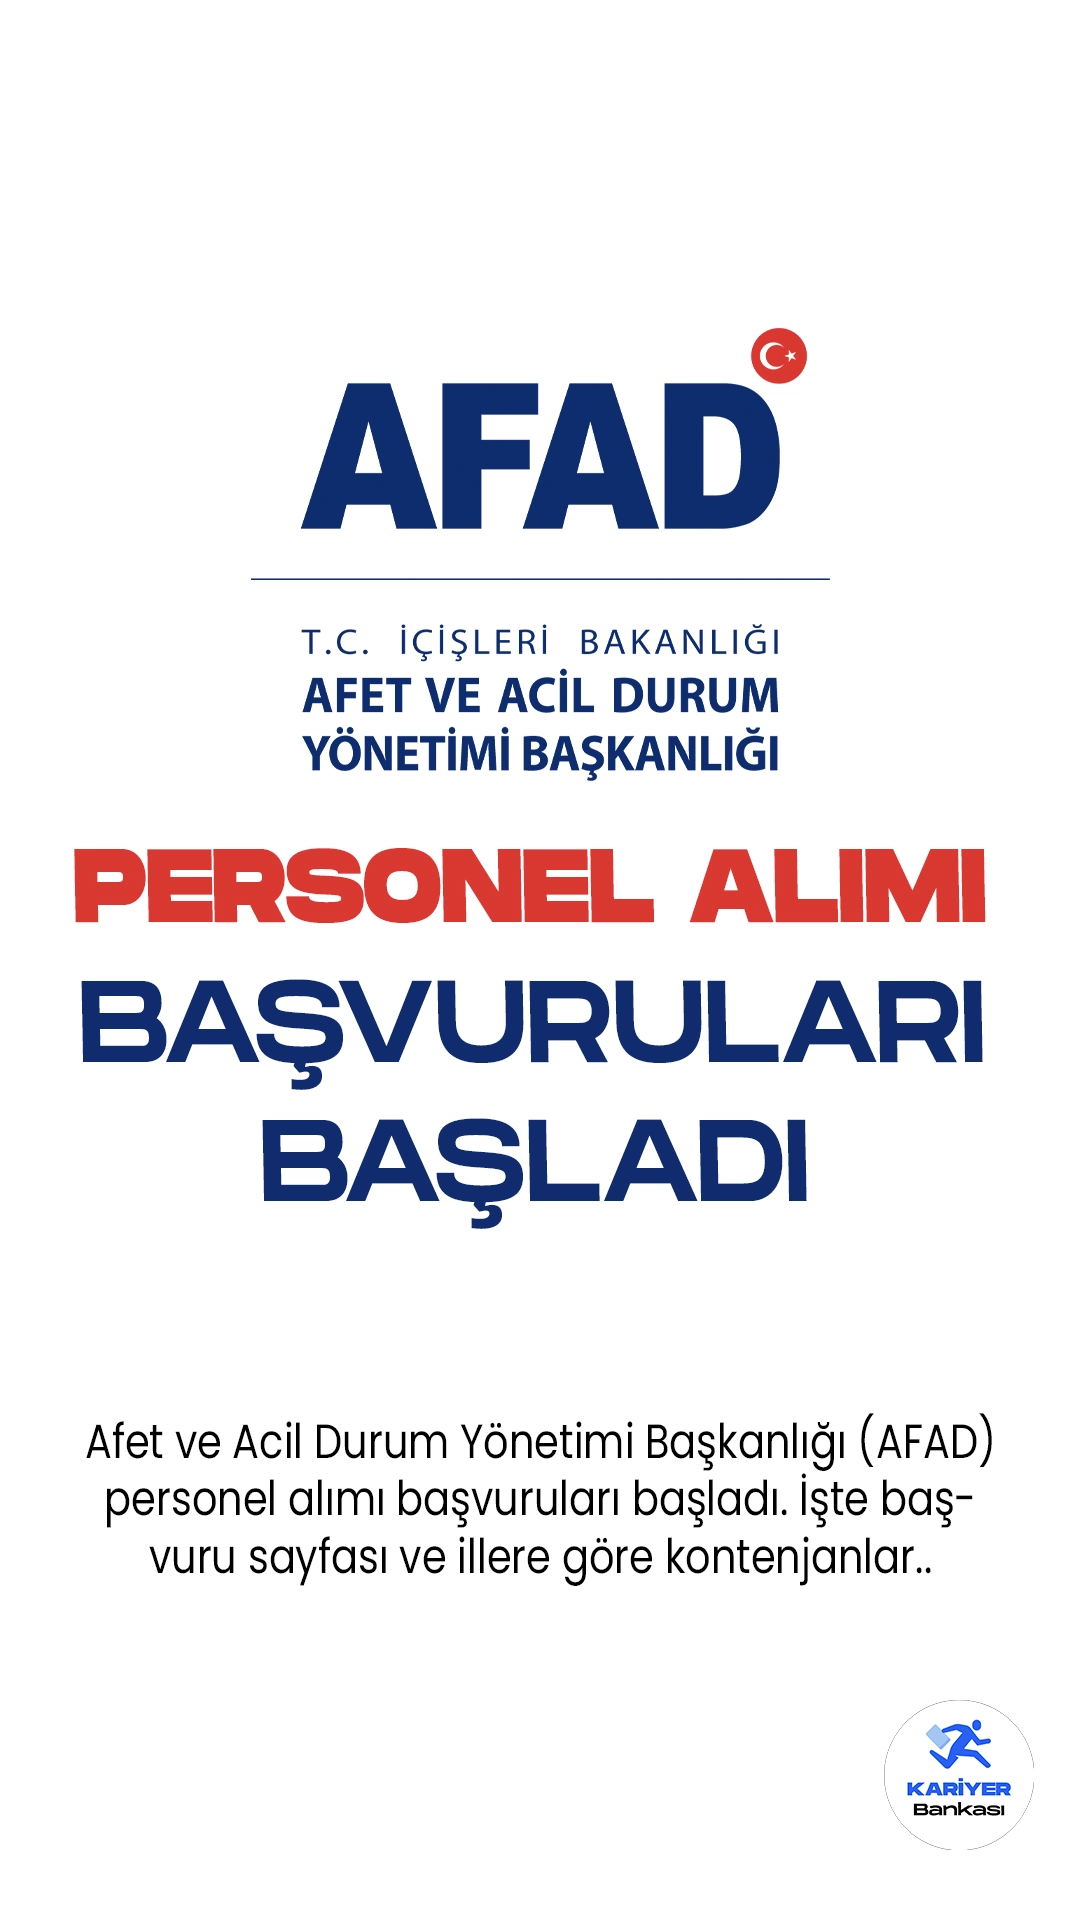 Afet ve Acil Durum Yönetimi Başkanlığı (AFAD) 68 personel alımı için başvurular başladı. Başvuru sayfası, illere göre kontenjan dağılımı ve şartlara dair tüm detaylar Kariyerbankasi.net'de.